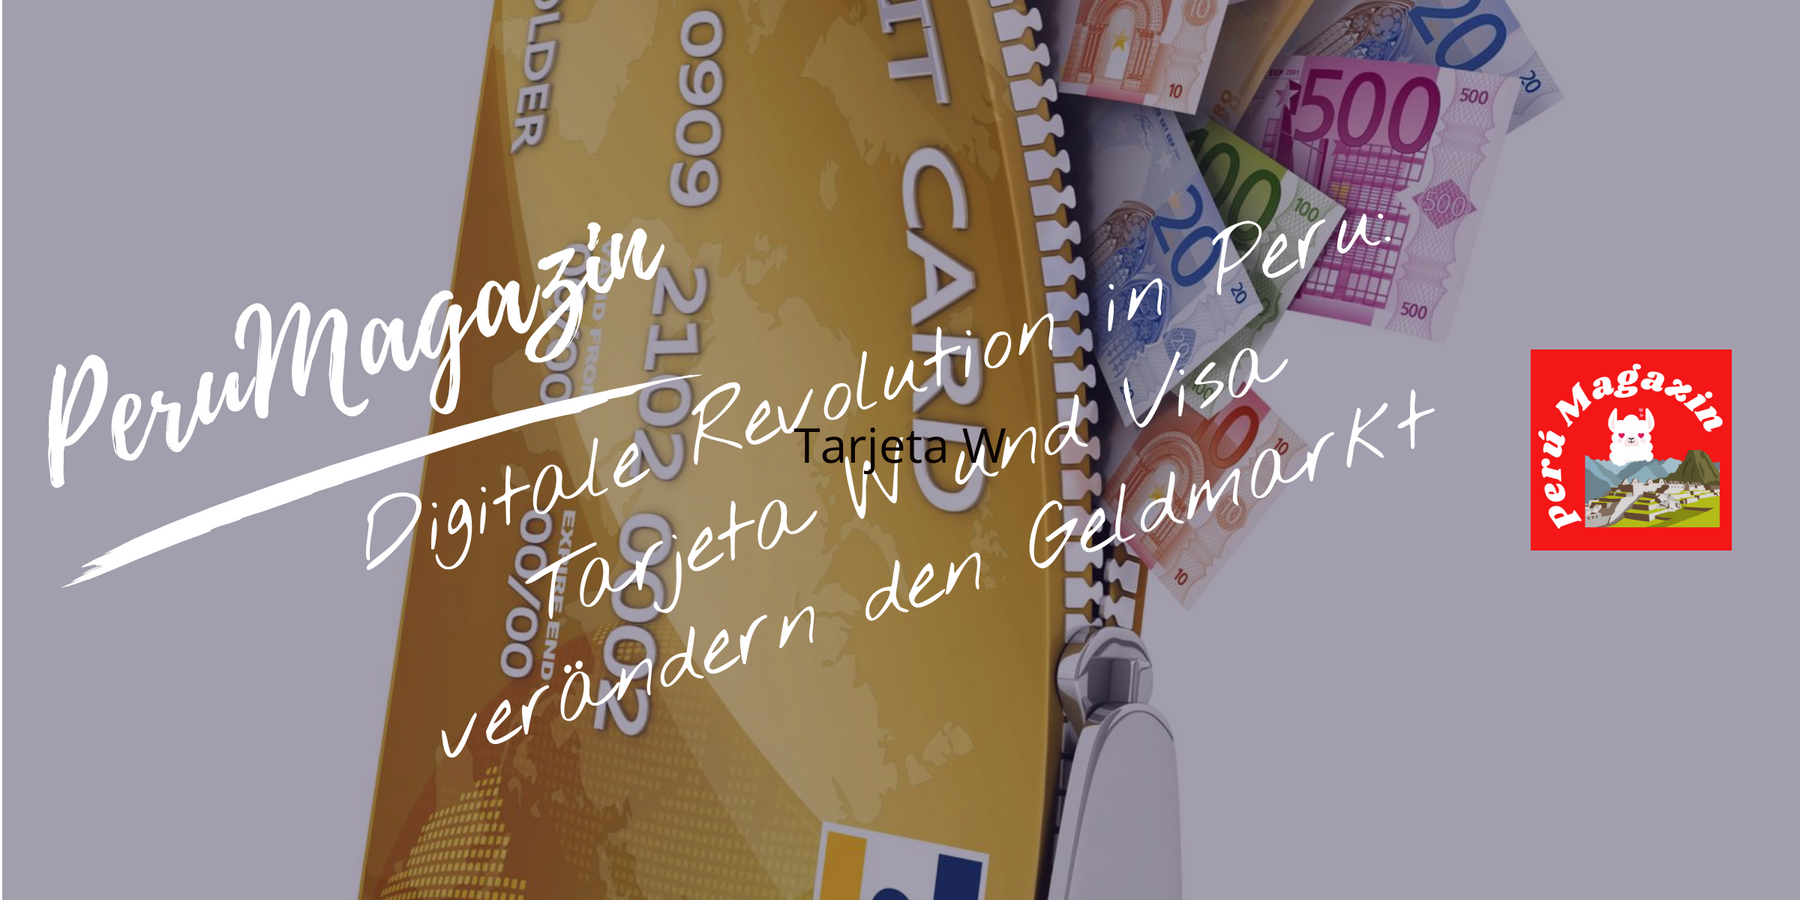 Digitale Revolution in Peru: Tarjeta W und Visa verändern den Geldmarkt